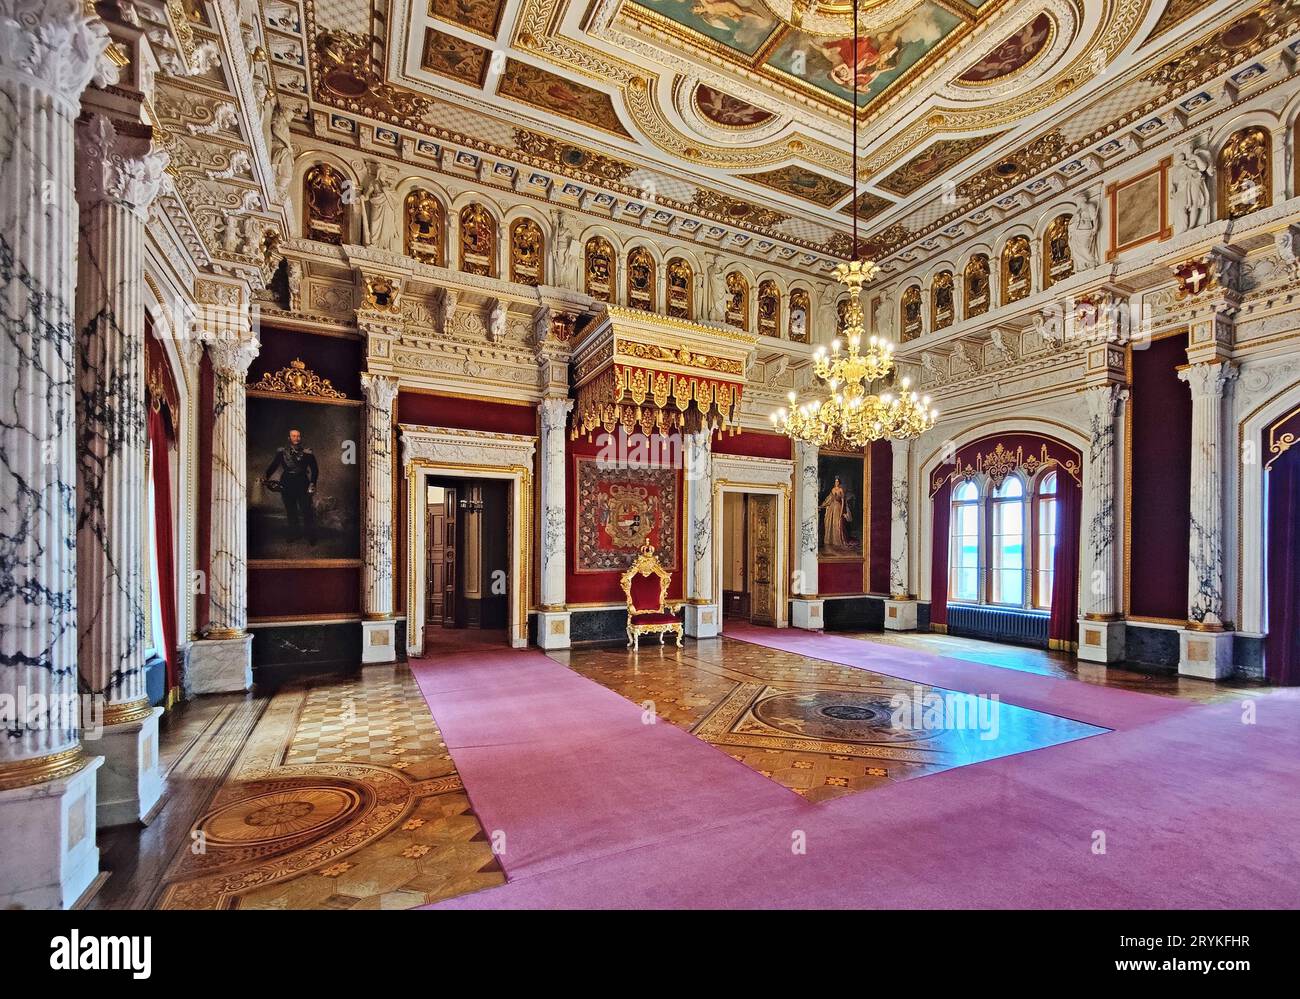 Sala del trono, Castello di Schwerin, Schwerin, Meclemburgo-Pomerania occidentale, Germania, Europa Foto Stock